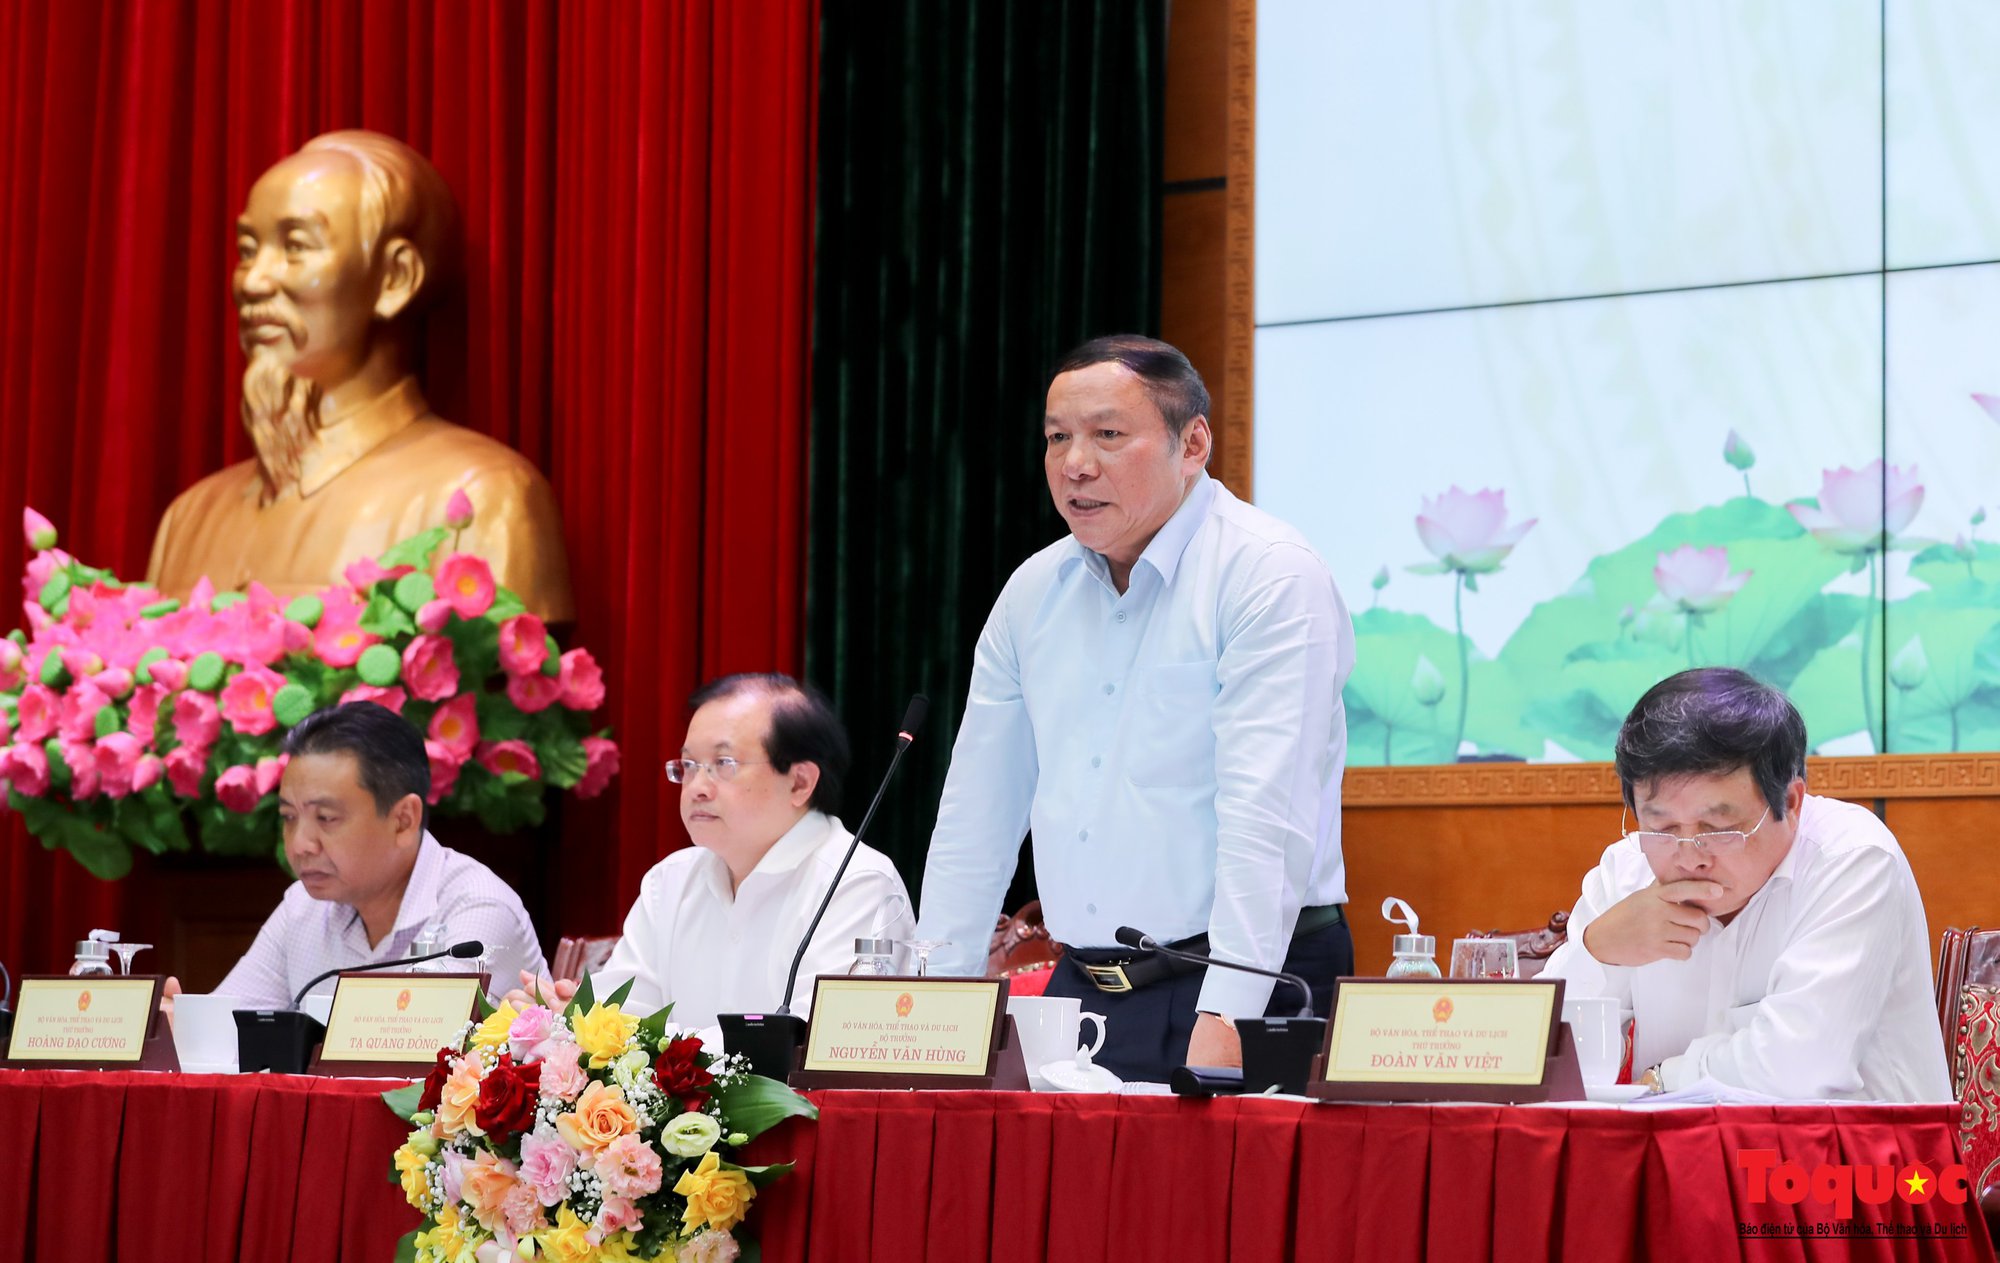 Bộ trưởng Nguyễn Văn Hùng đối thoại với thủ trưởng các đơn vị thuộc Bộ VHTTDL